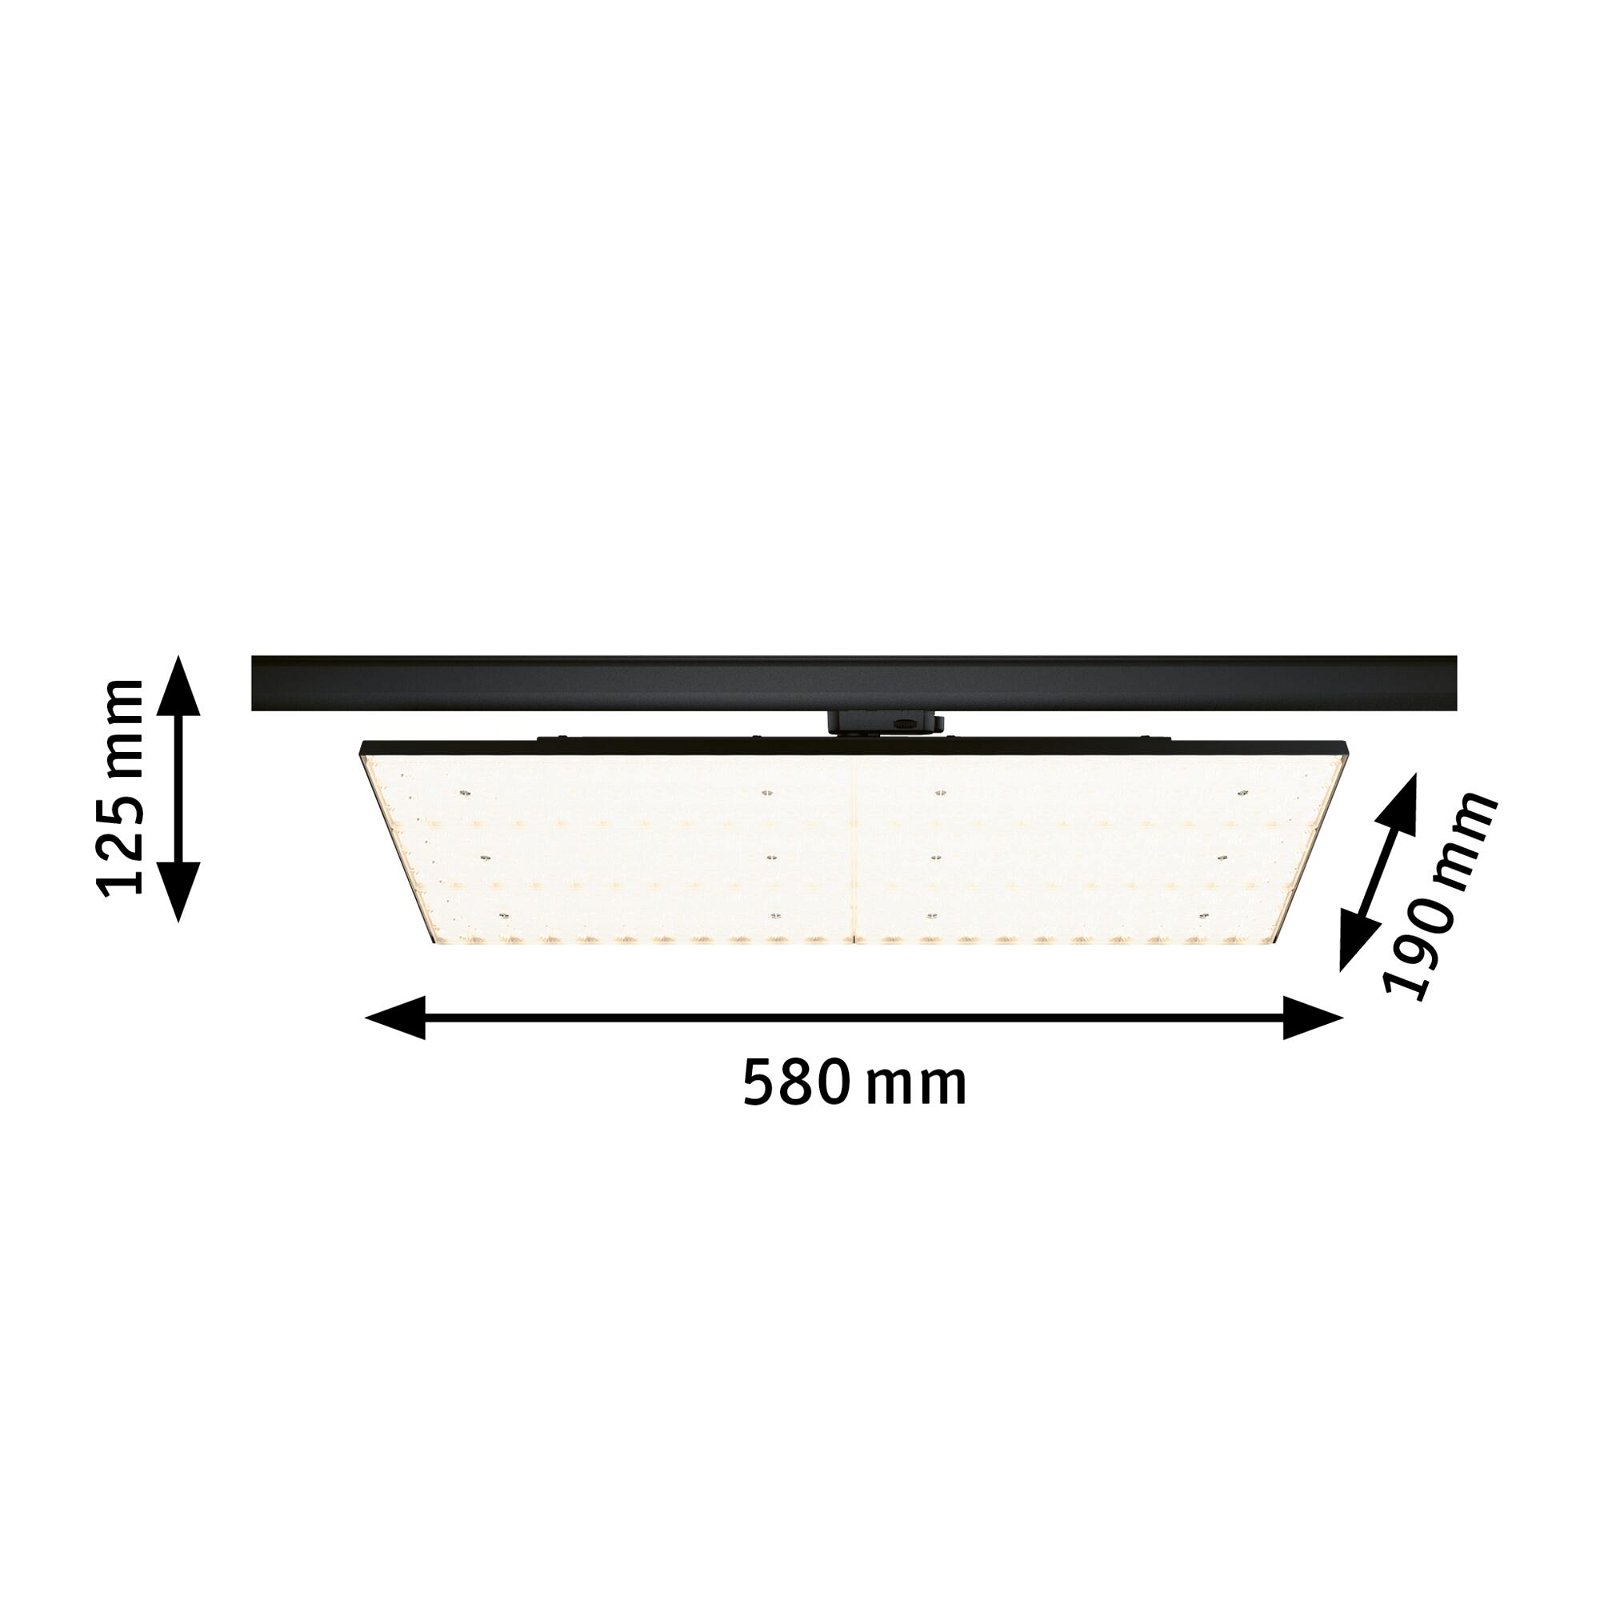 ProRail3 LED Panel Deck 6600lm 75W 3000K 230V Black